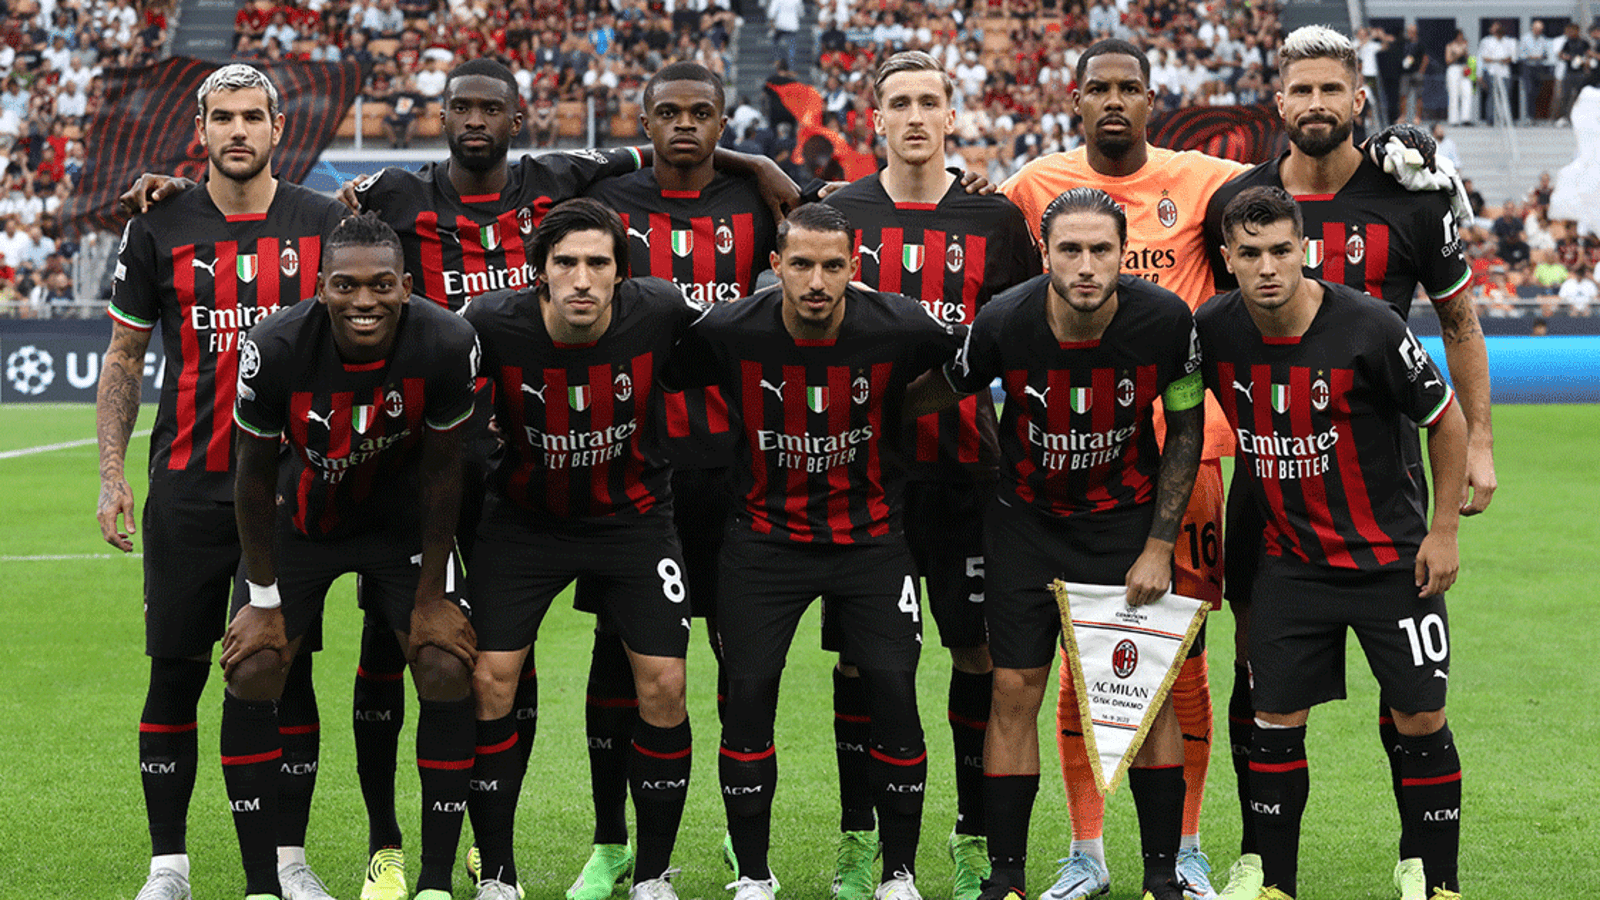 Tiểu Sử Câu Lạc Bộ AC Milan - CLB Nổi Tiếng Của Bóng Đá Thế Giới